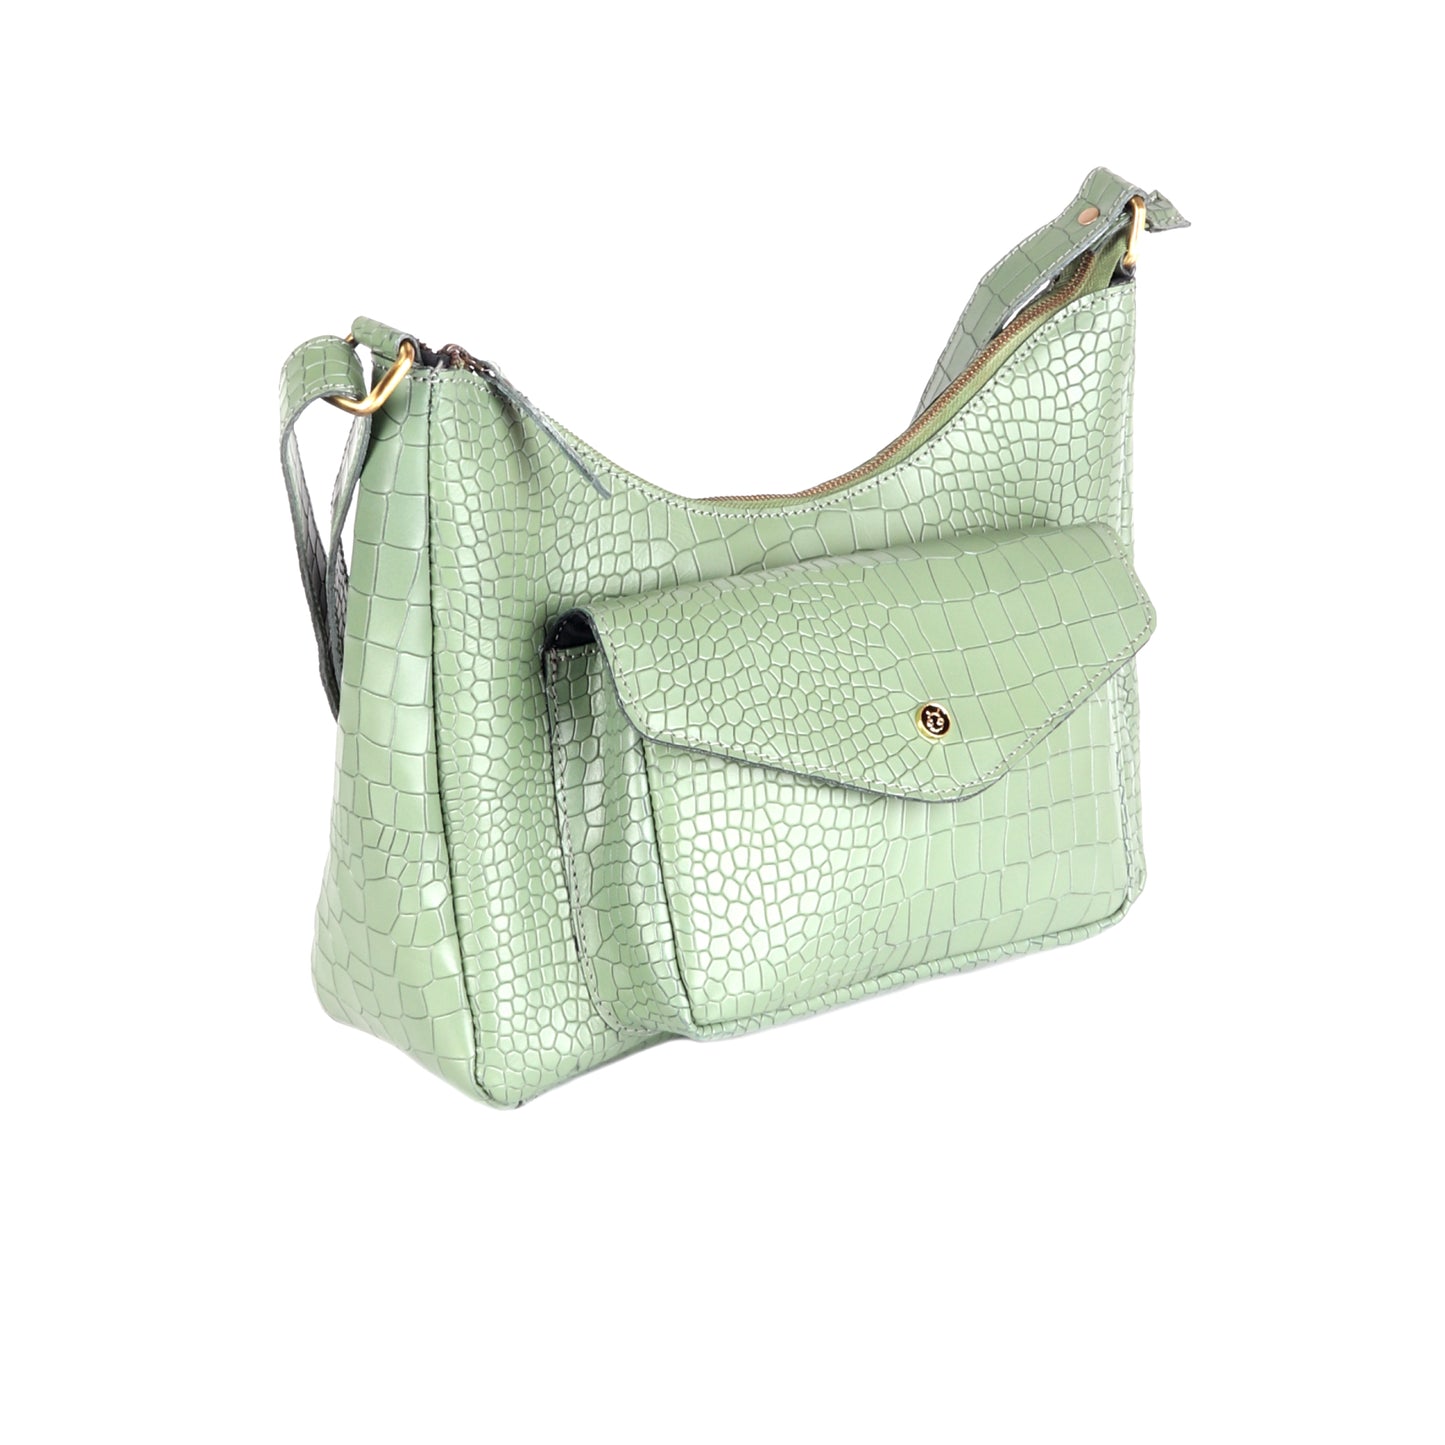 Ganymede Croco Green Leather Handbag